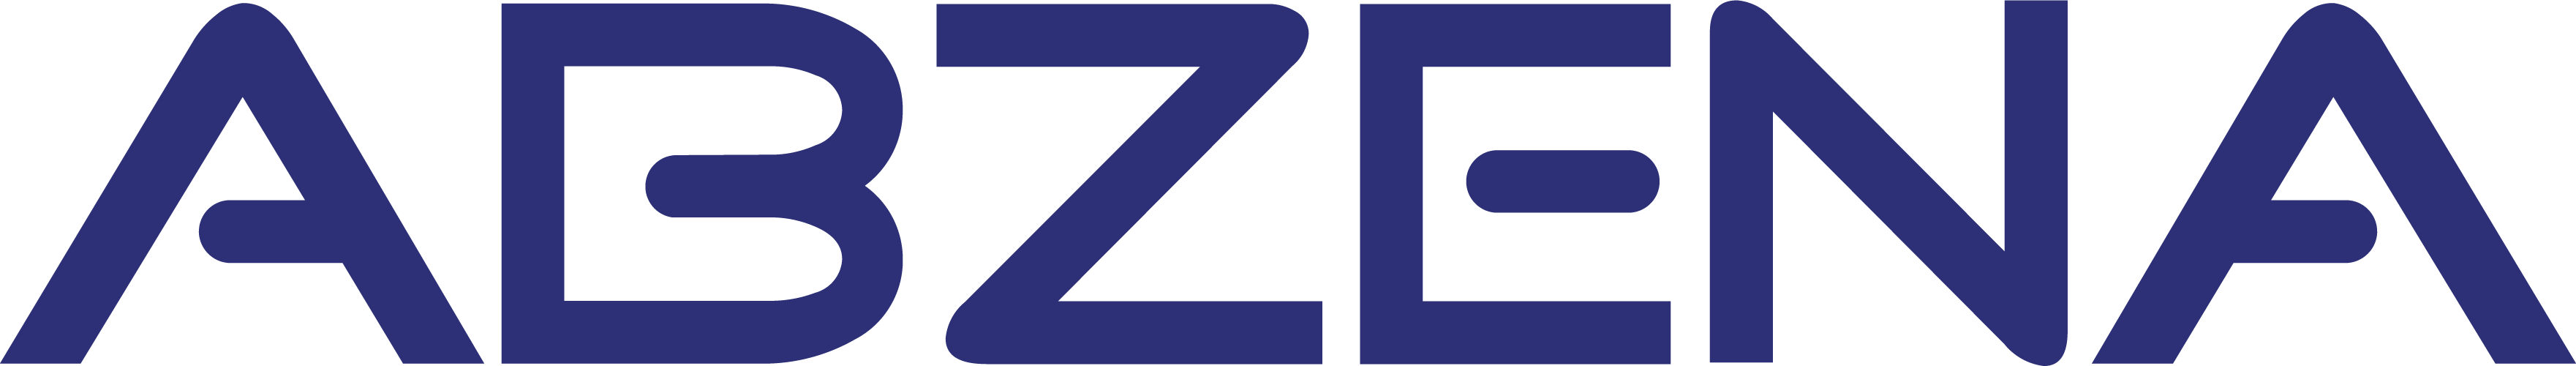 Abzena - Logo No Strapline - RGB[6618]